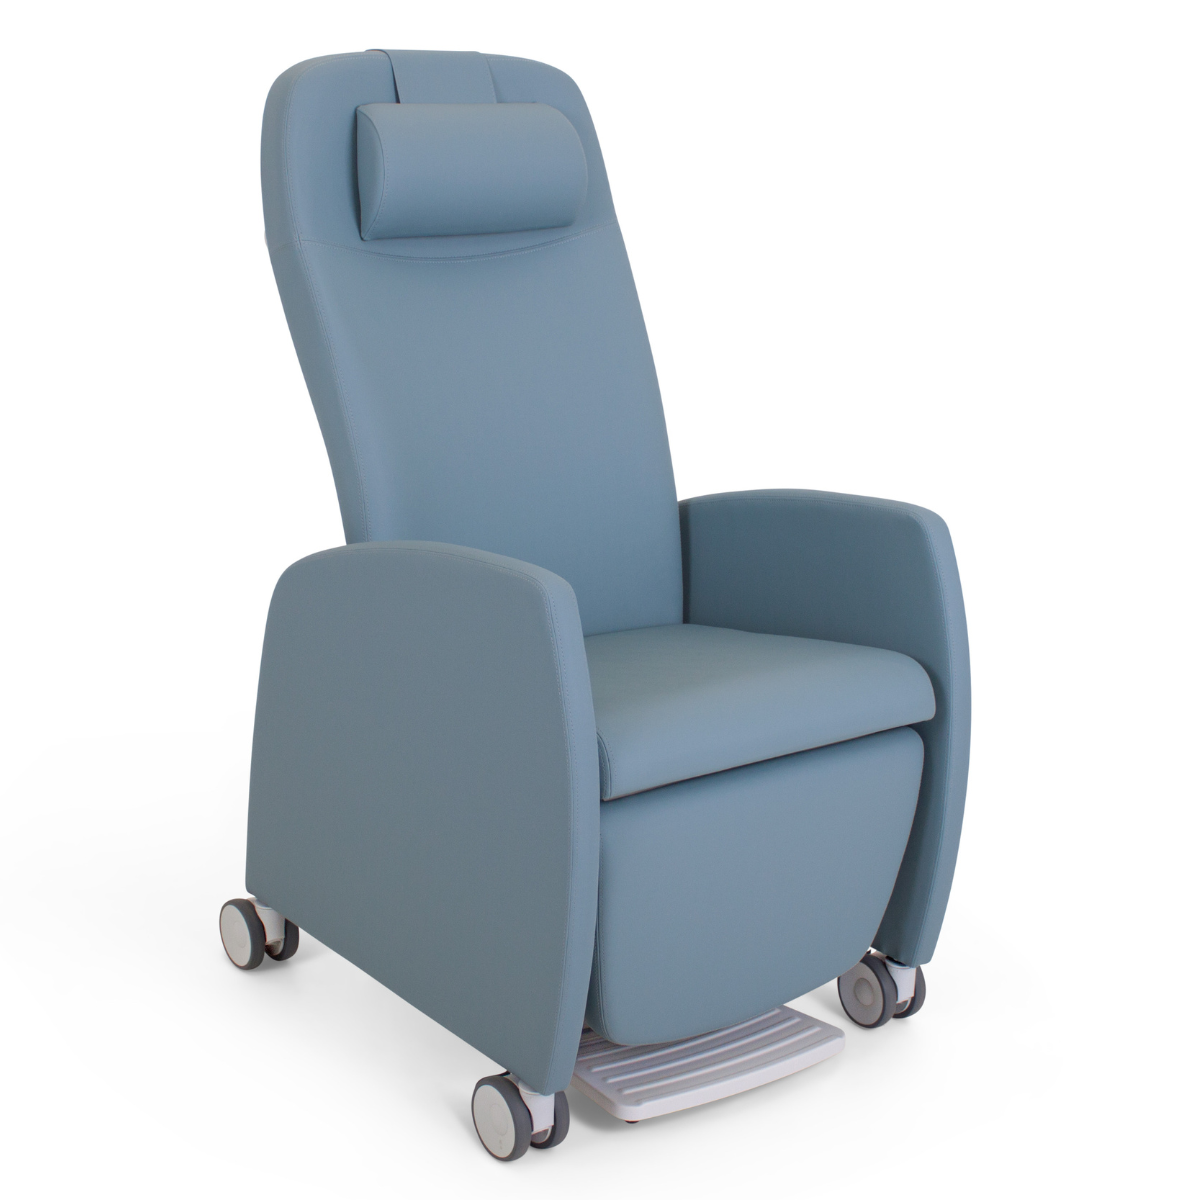 Haelvoet Domus Flex easy chair